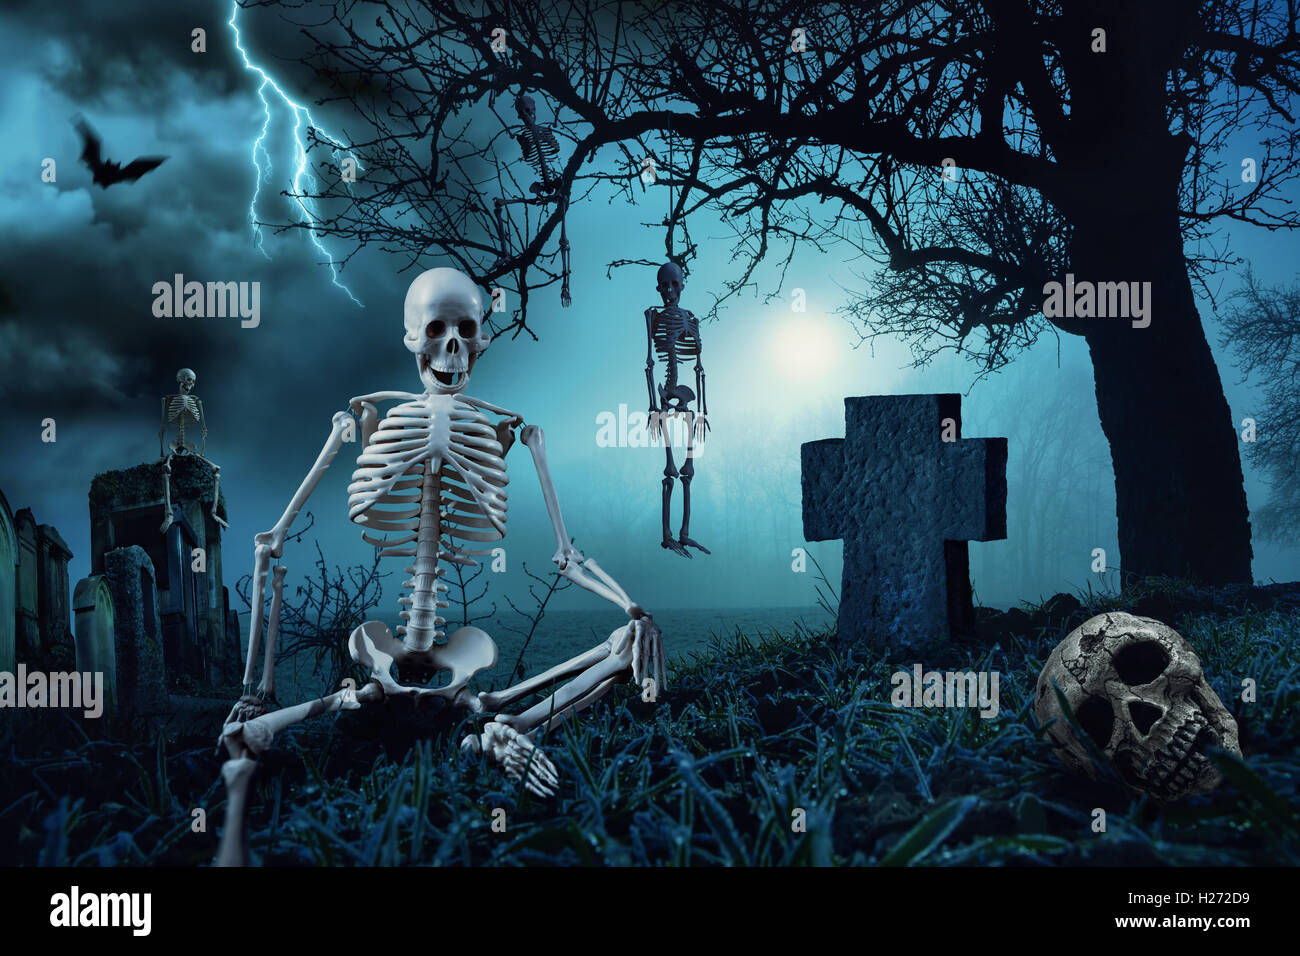 Scène de nuit avec Halloween squelettes dans un cimetière et la silhouette d'un arbre mort dans la lune bleue Banque D'Images